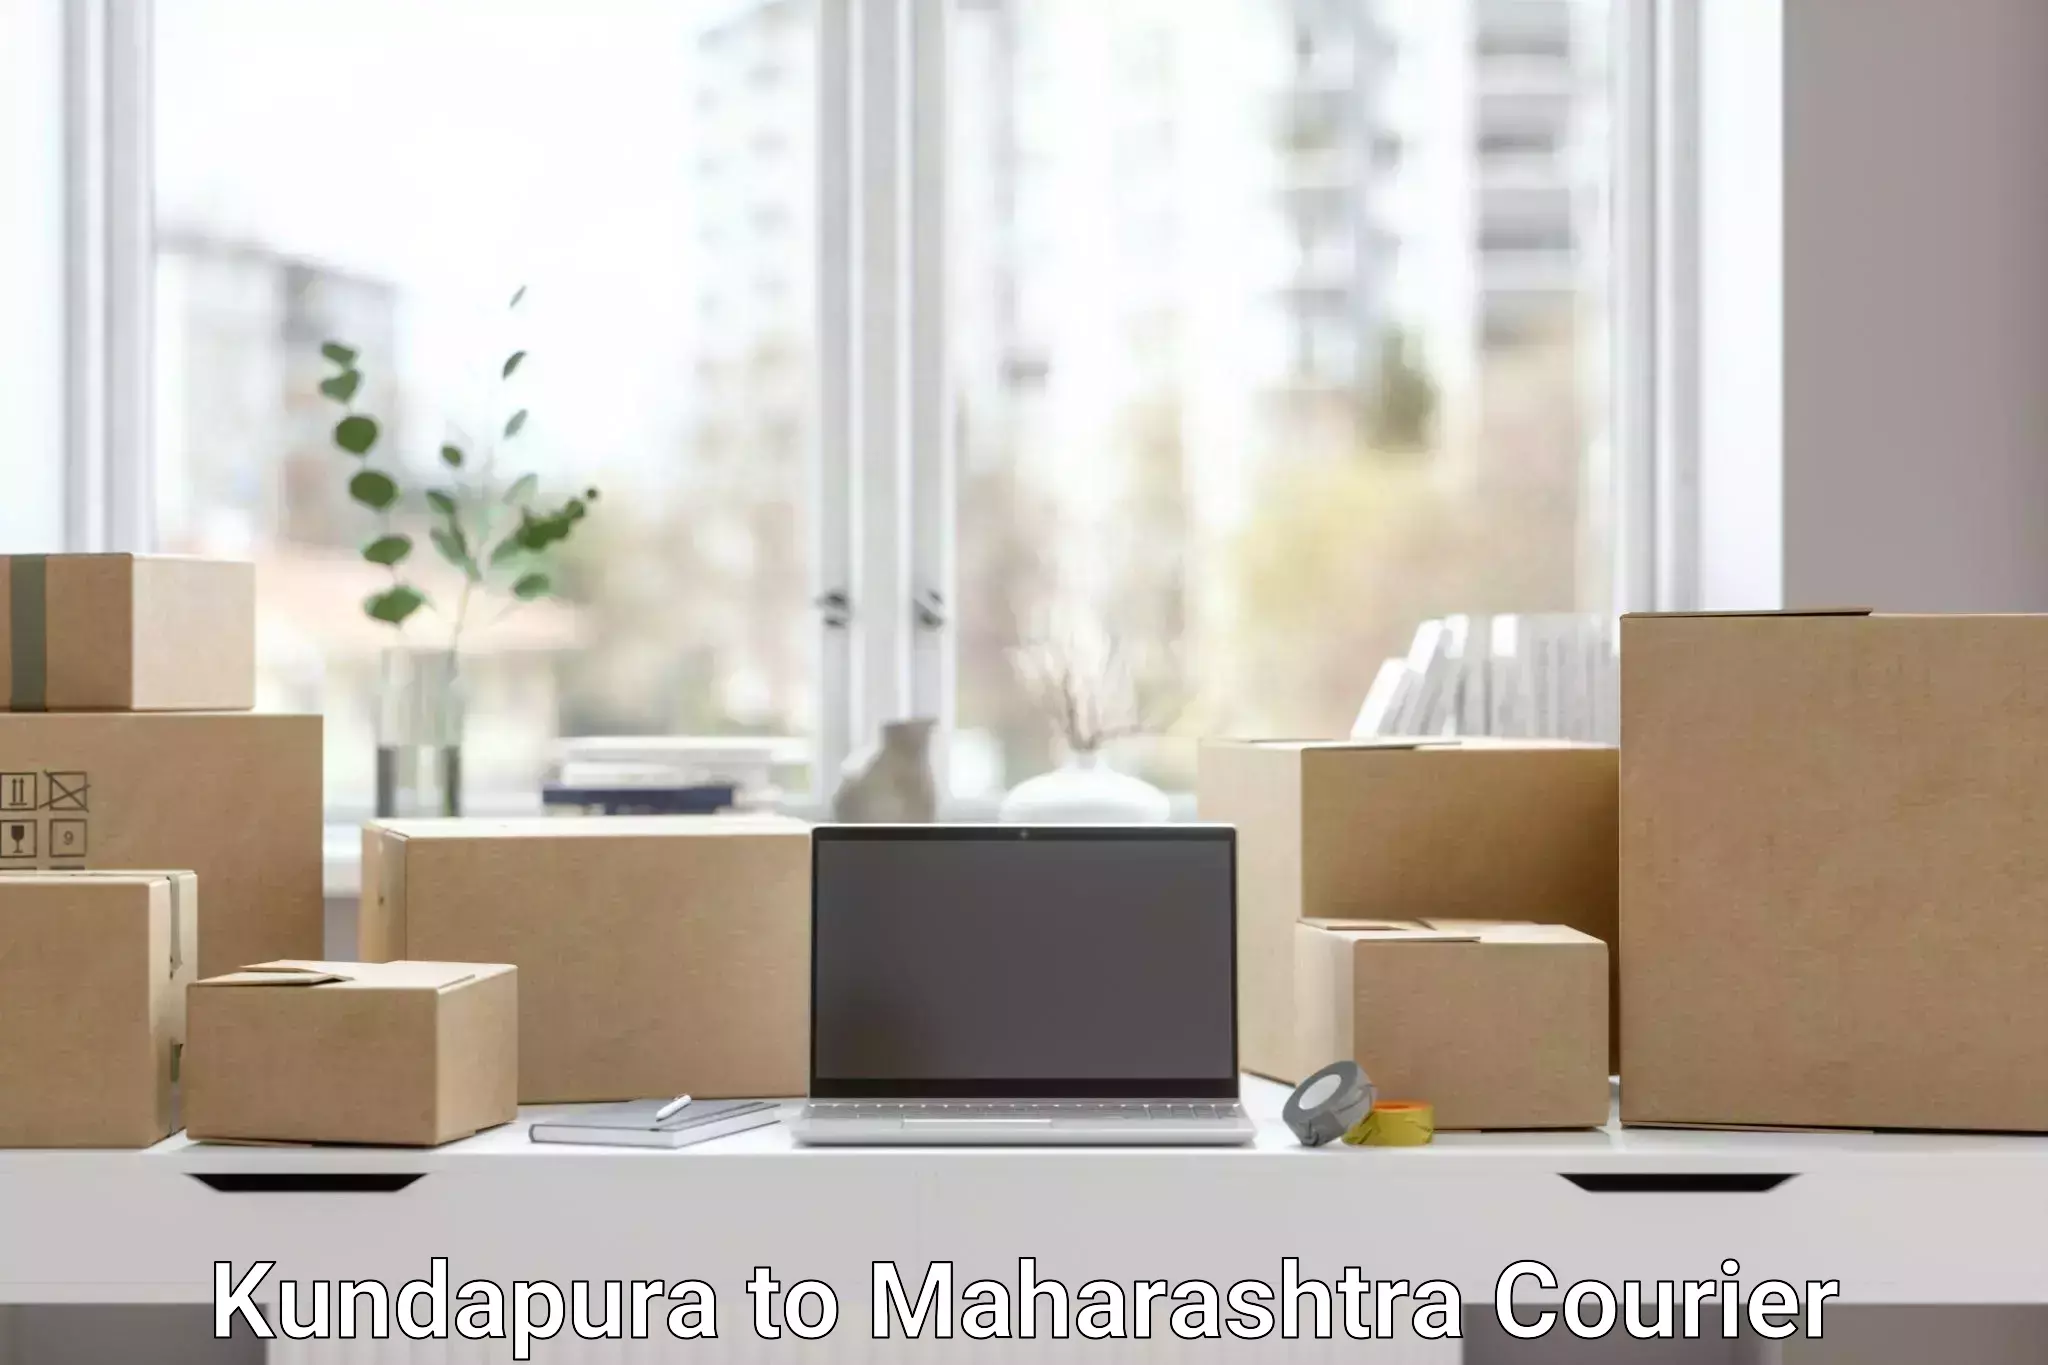 On-time delivery services Kundapura to Maharashtra